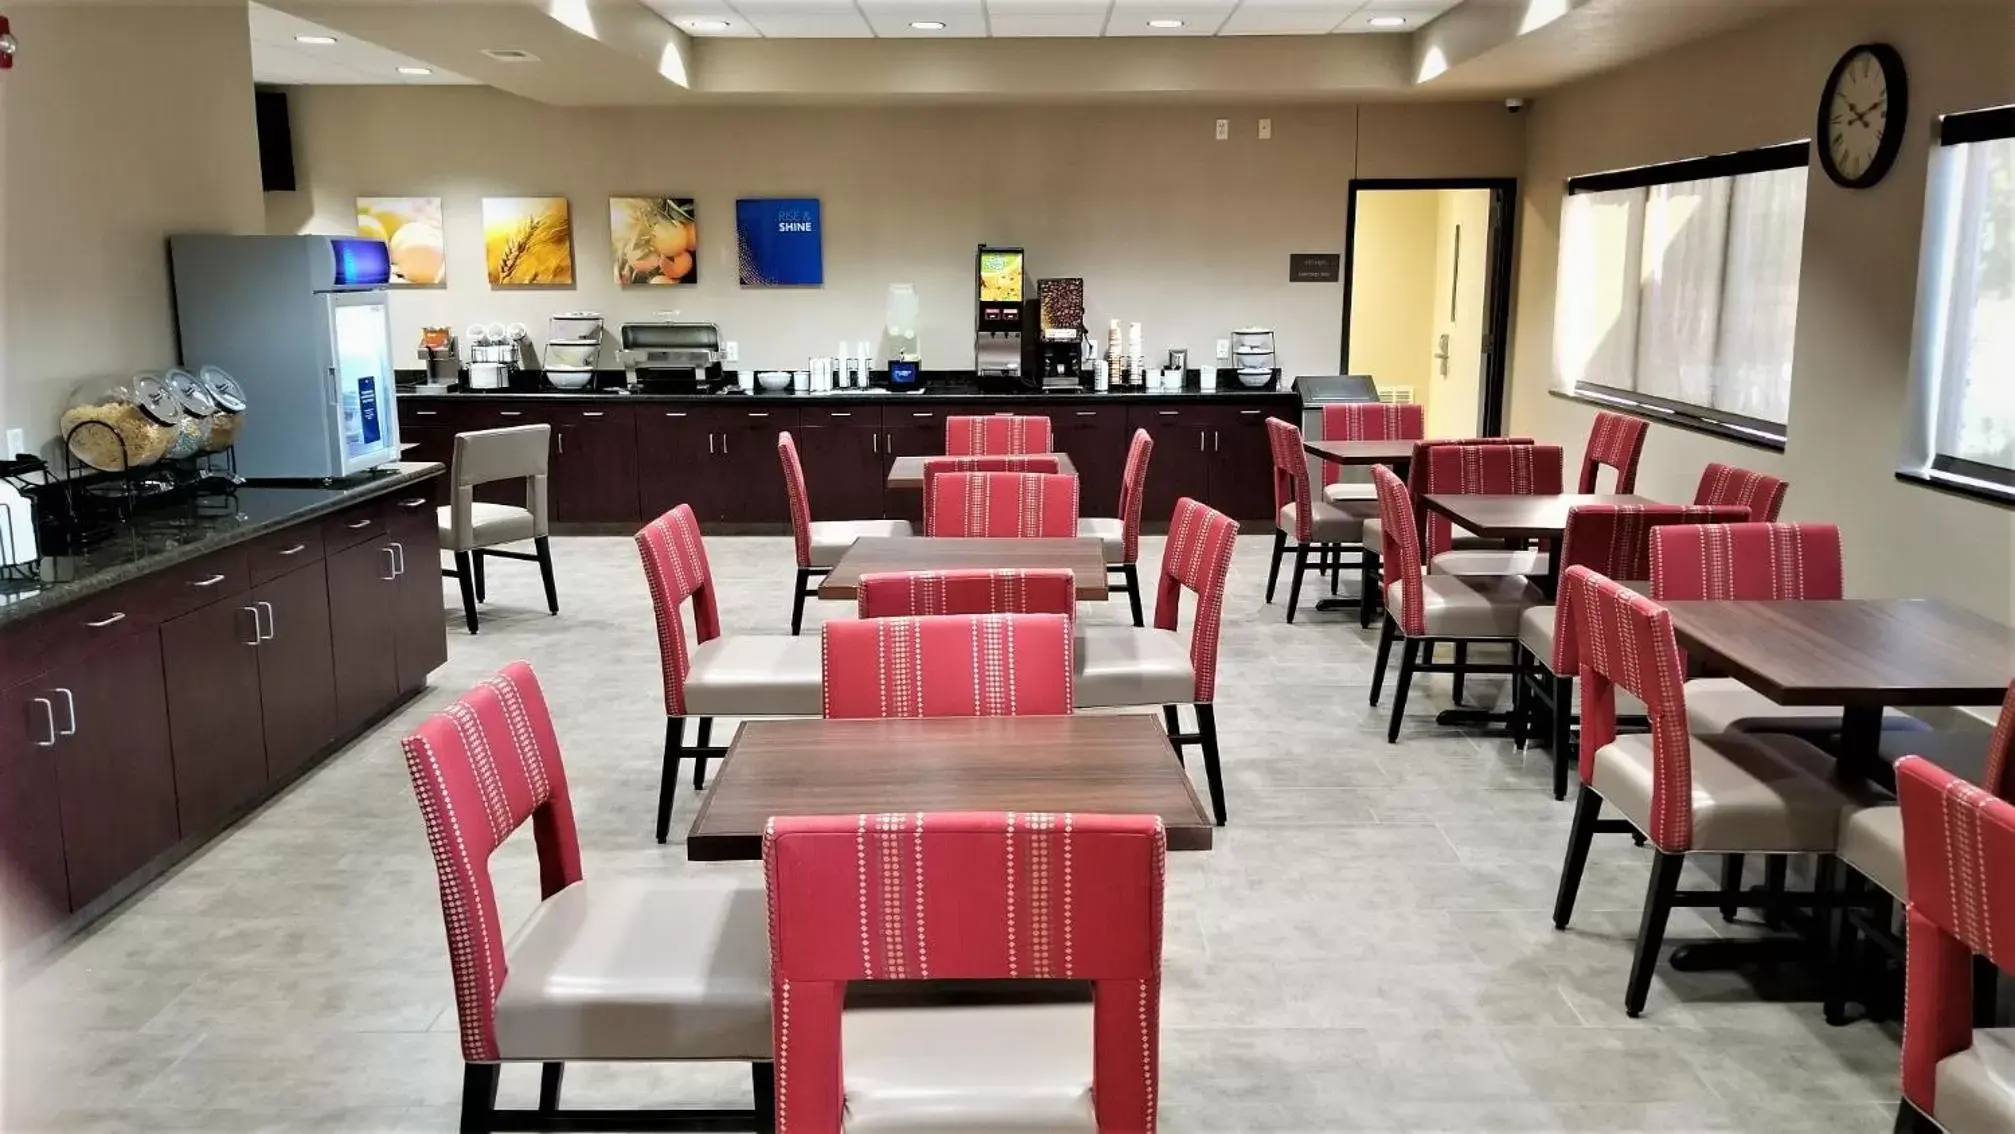 Restaurant/Places to Eat in Comfort Inn Bonner Springs Kansas City